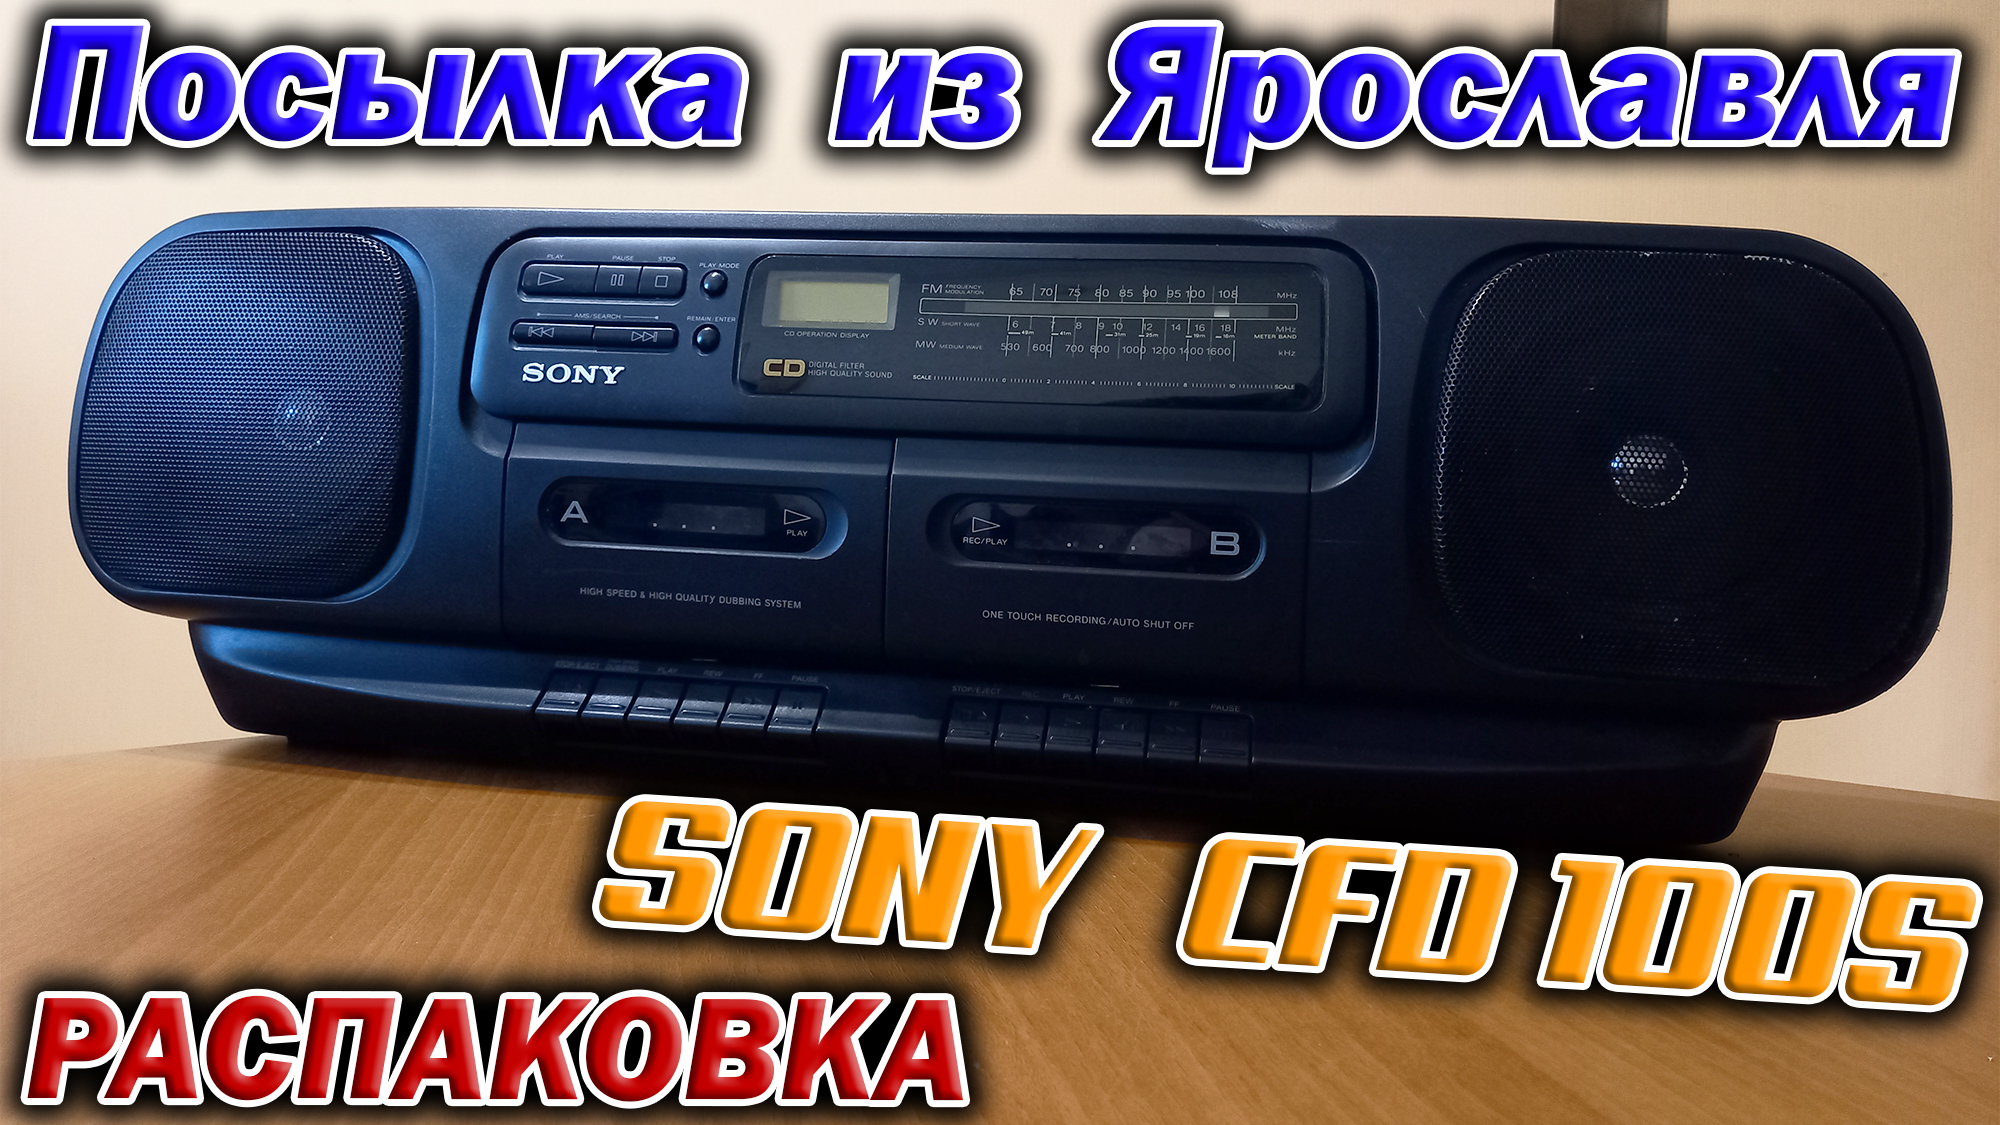 Получил посылку из Ярославля. А в ней магнитола Sony CFD-100S с CD плеером.